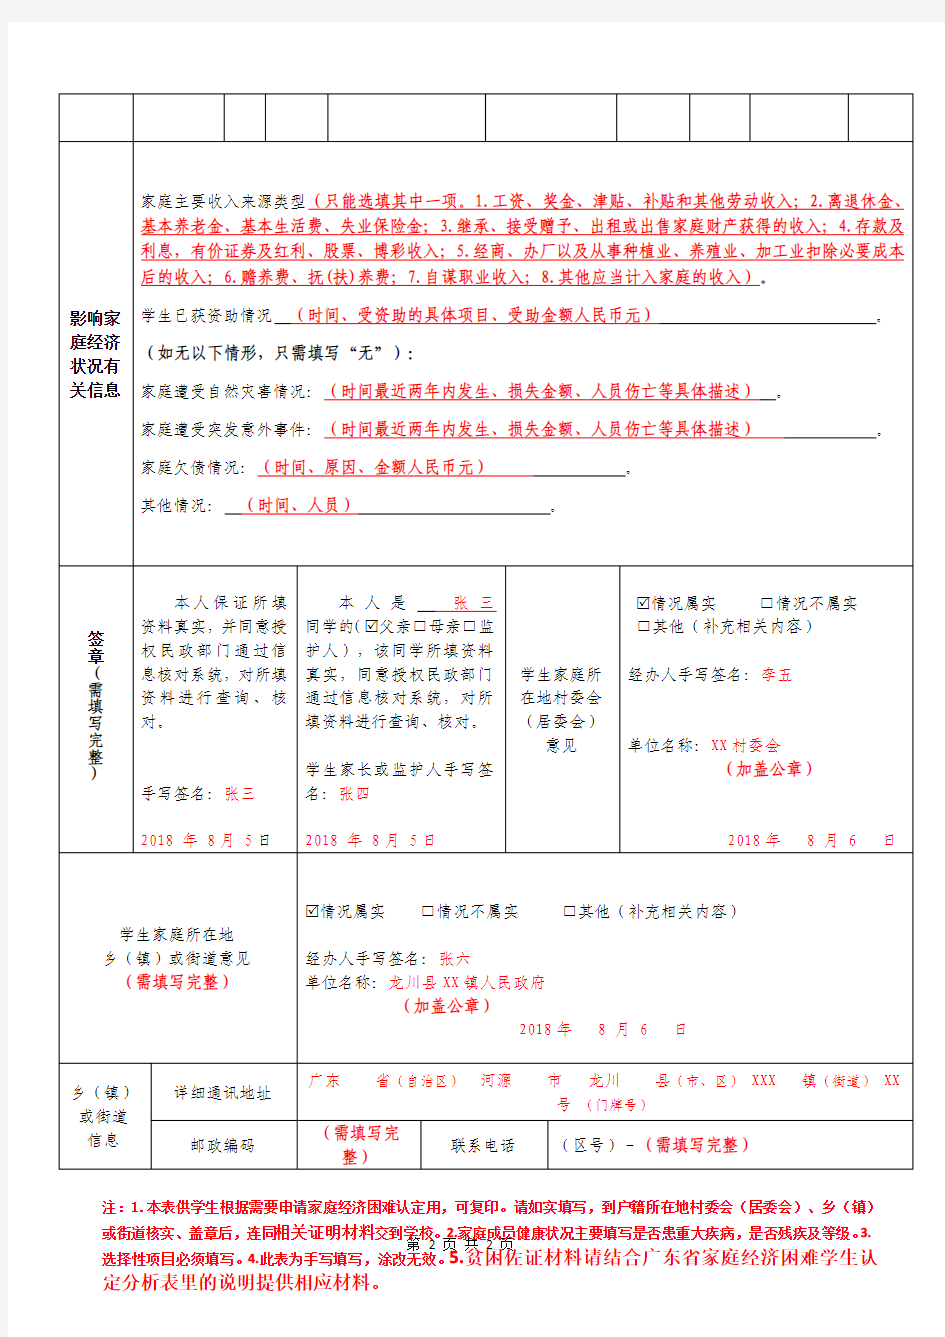 广东家庭经济困难学生认定申请表填写模板